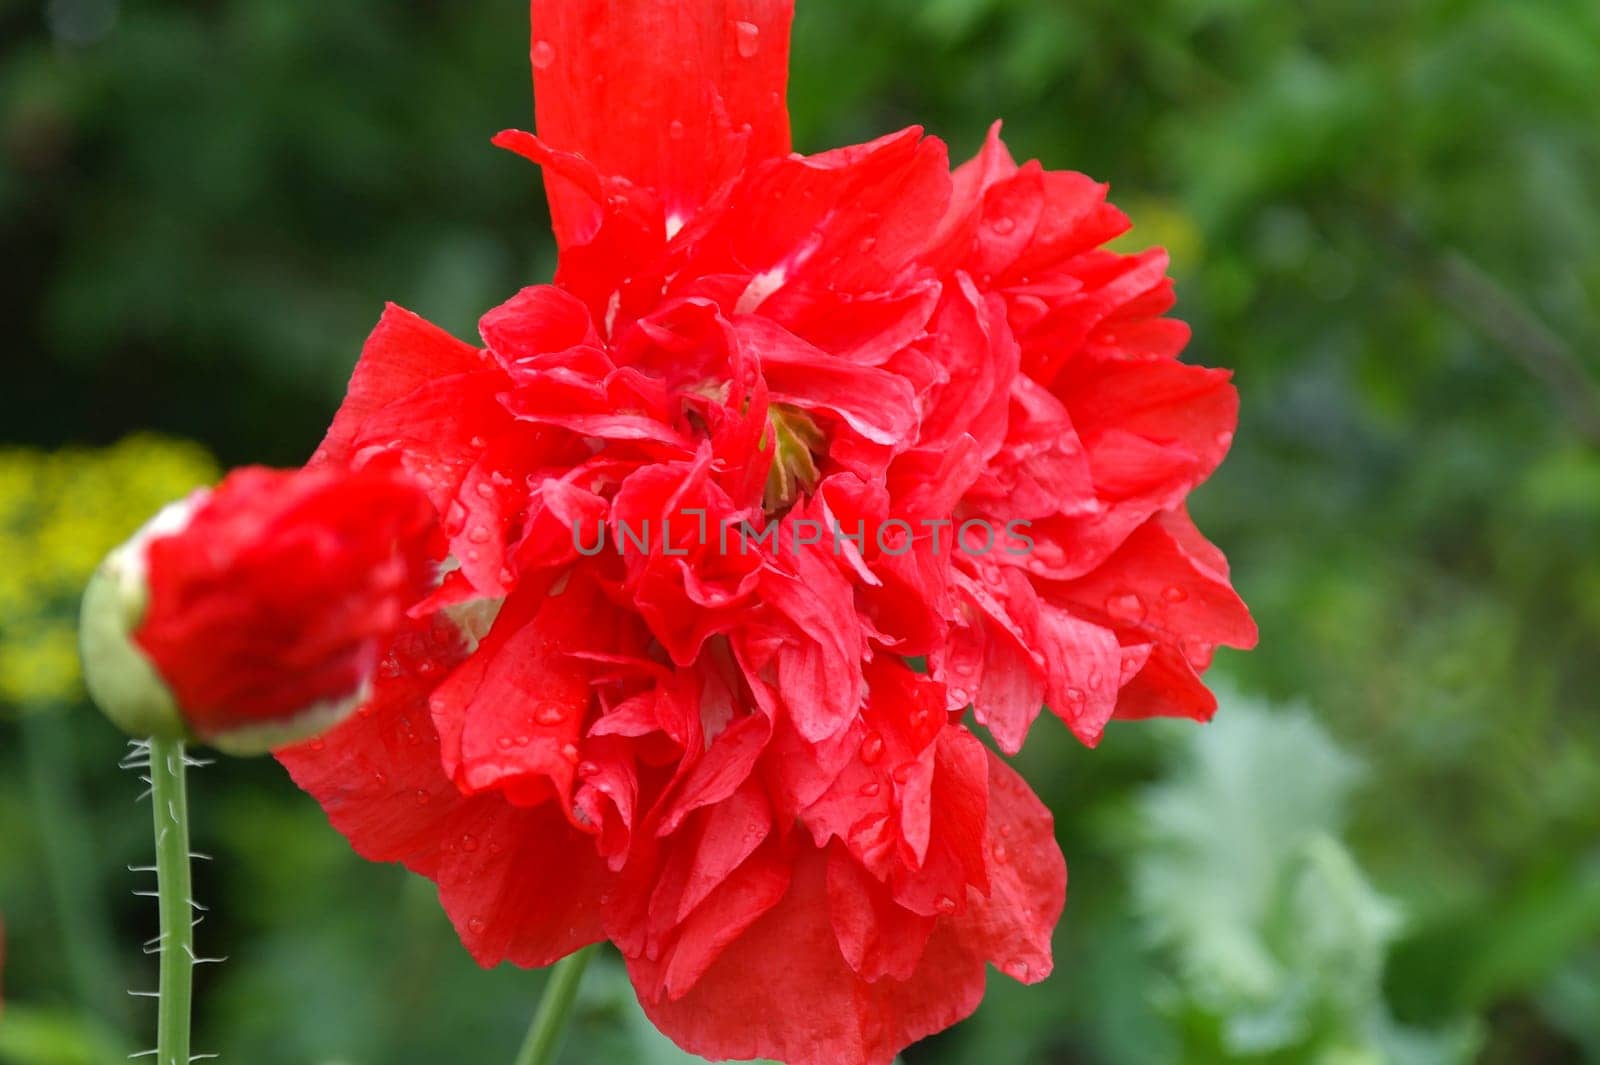 Red big poppy flower in garden